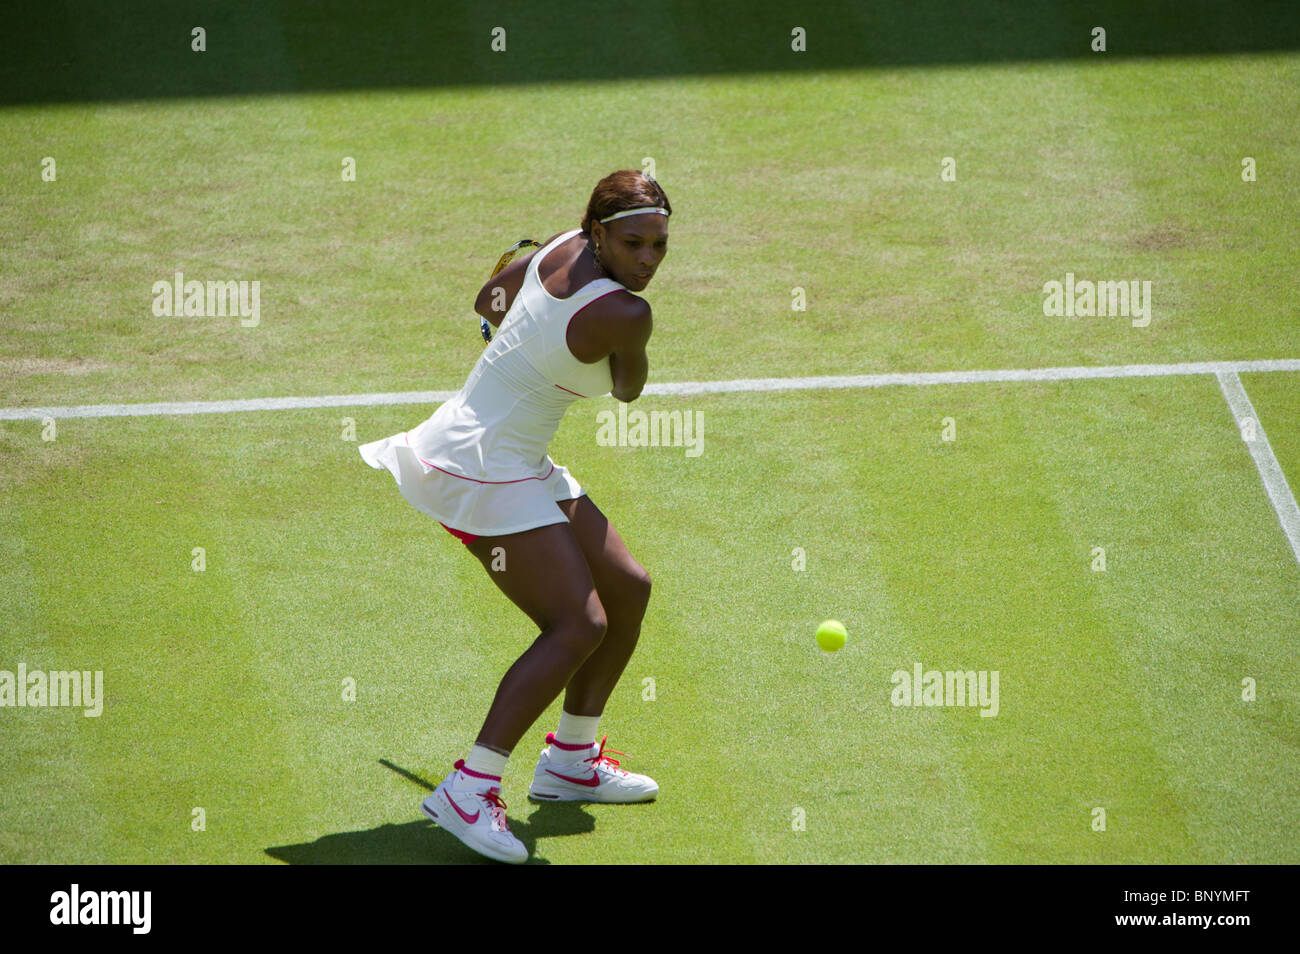 22 juin 2010 : Serena Williams / Michelle Larcher De Brito. Tournoi international de tennis de Wimbledon qui s'est tenue à l'Angleterre Tous L Banque D'Images